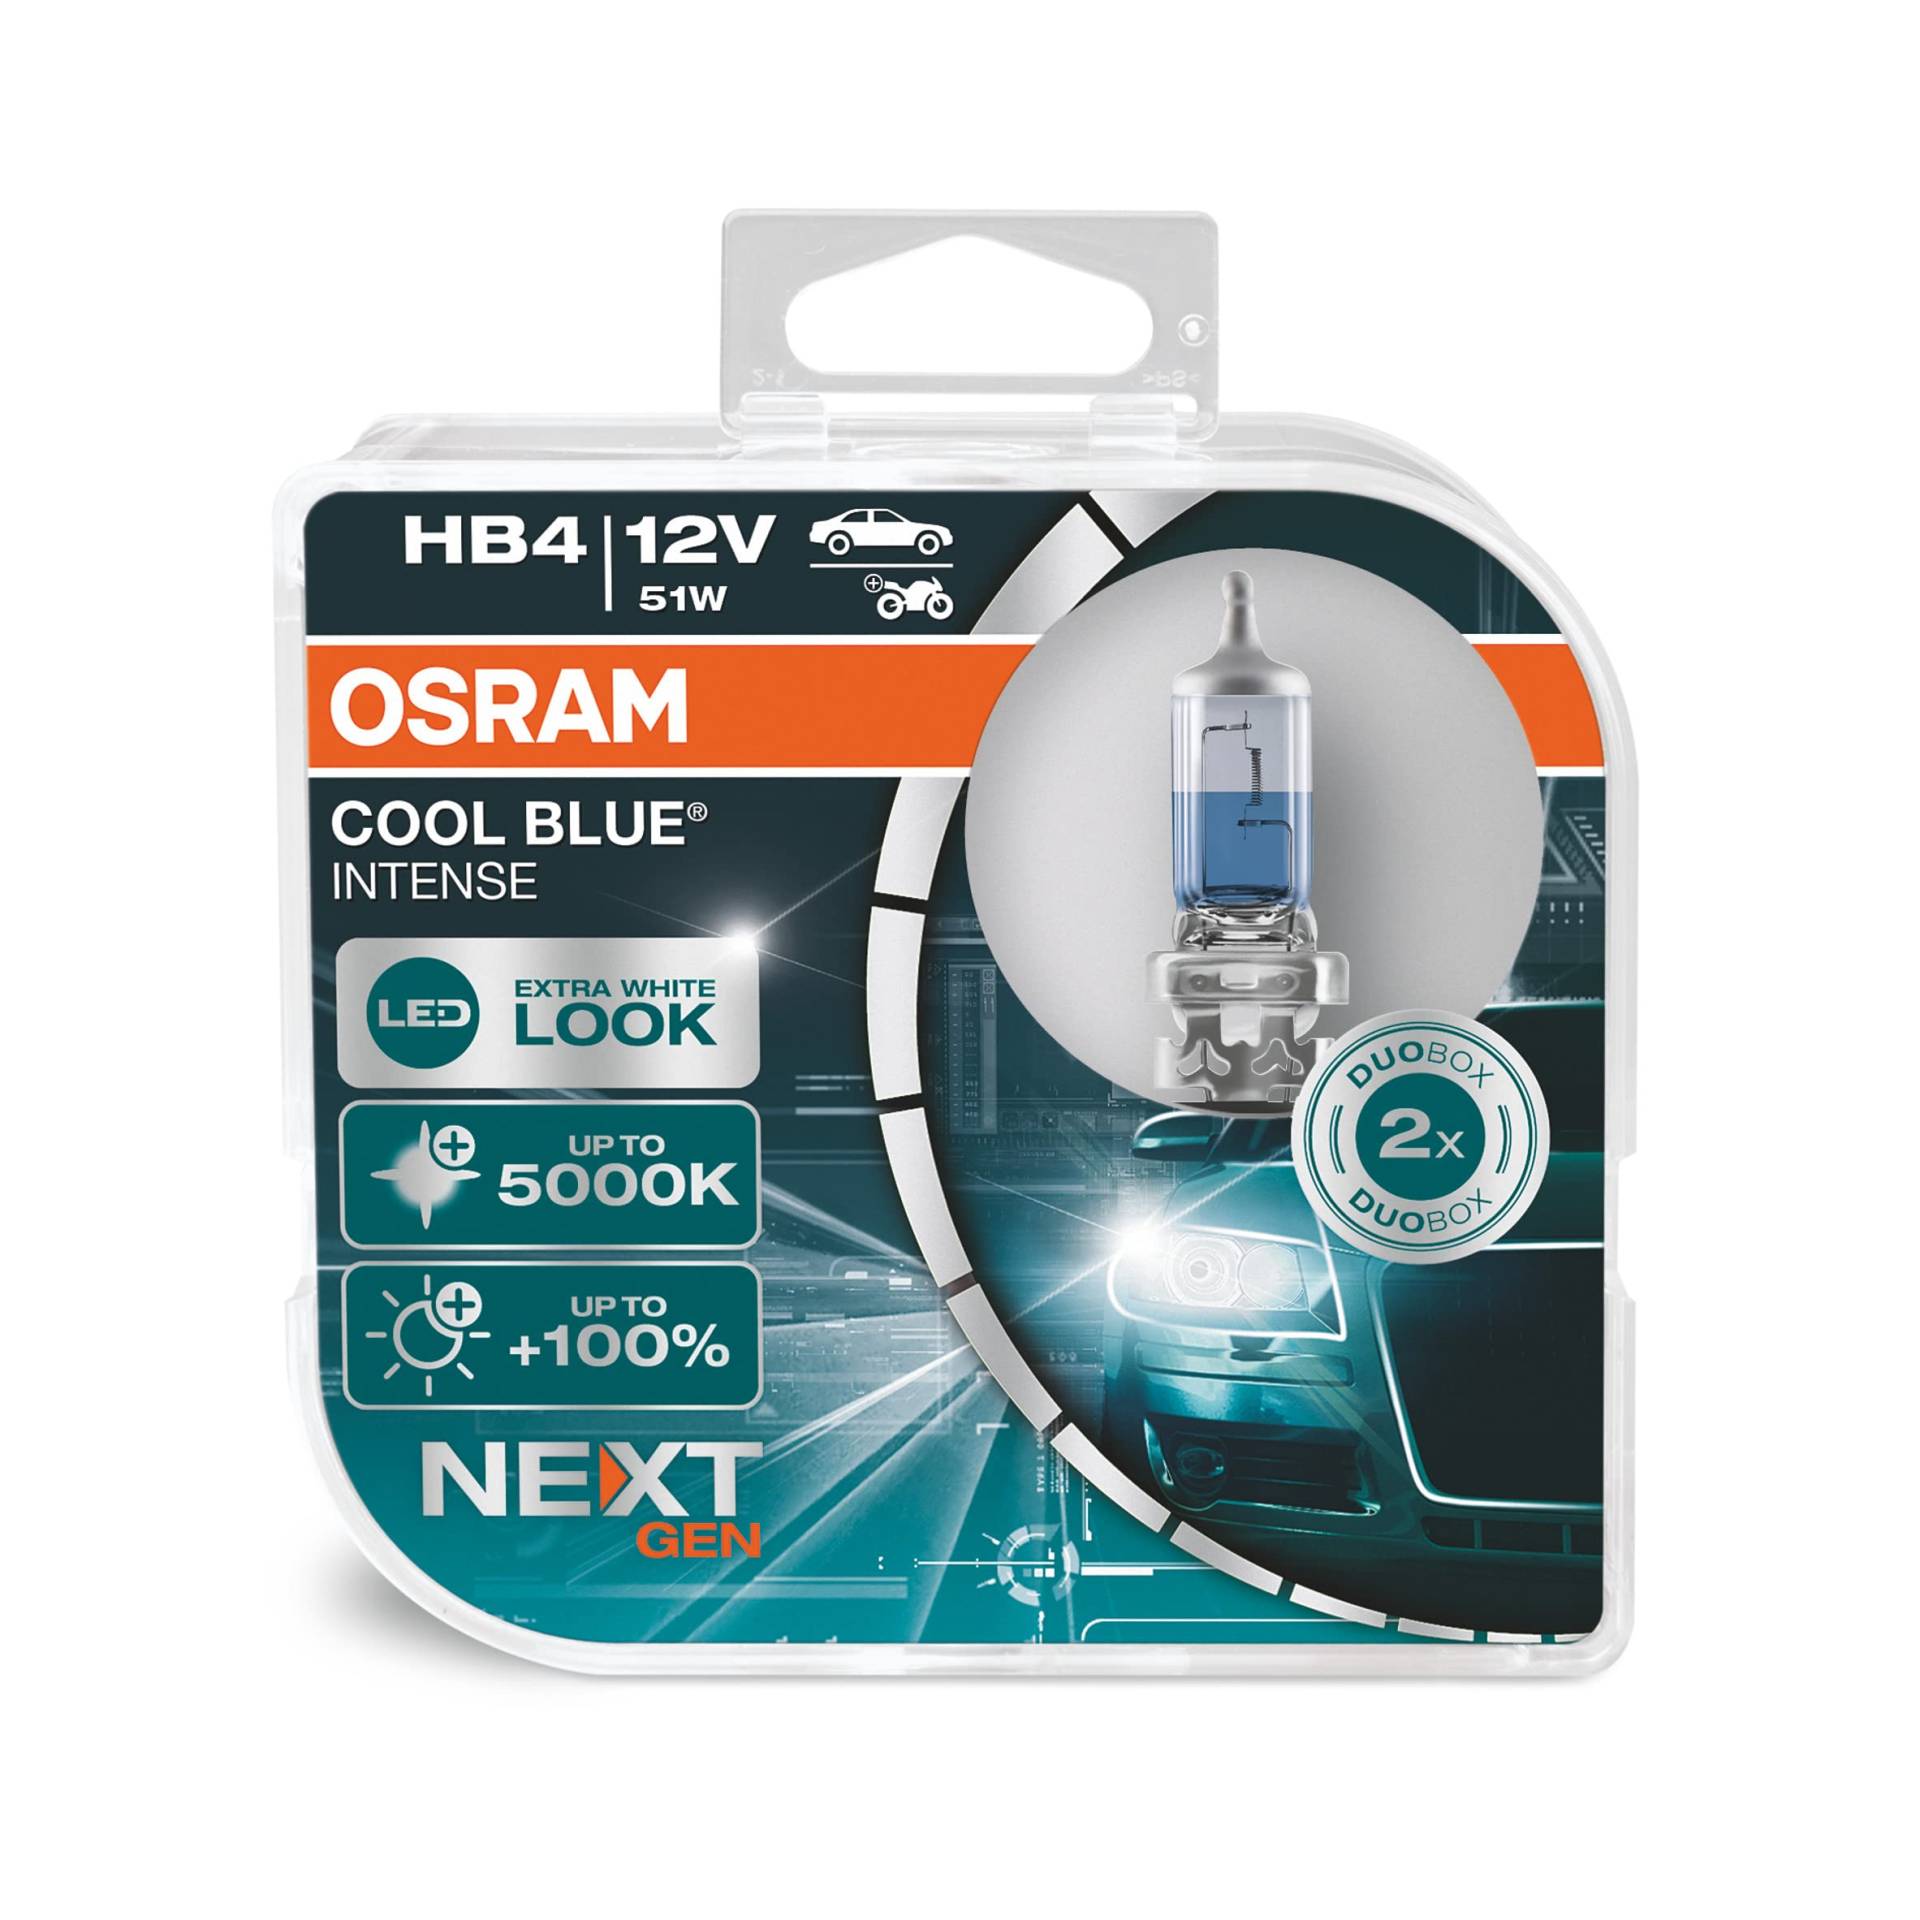 Osram COOL BLUE INTENSE HB4, 100% mehr Helligkeit, bis zu 5.000K, Halogen-Scheinwerferlampe, LED-Look, Duo Box (2 Lampen) von Osram